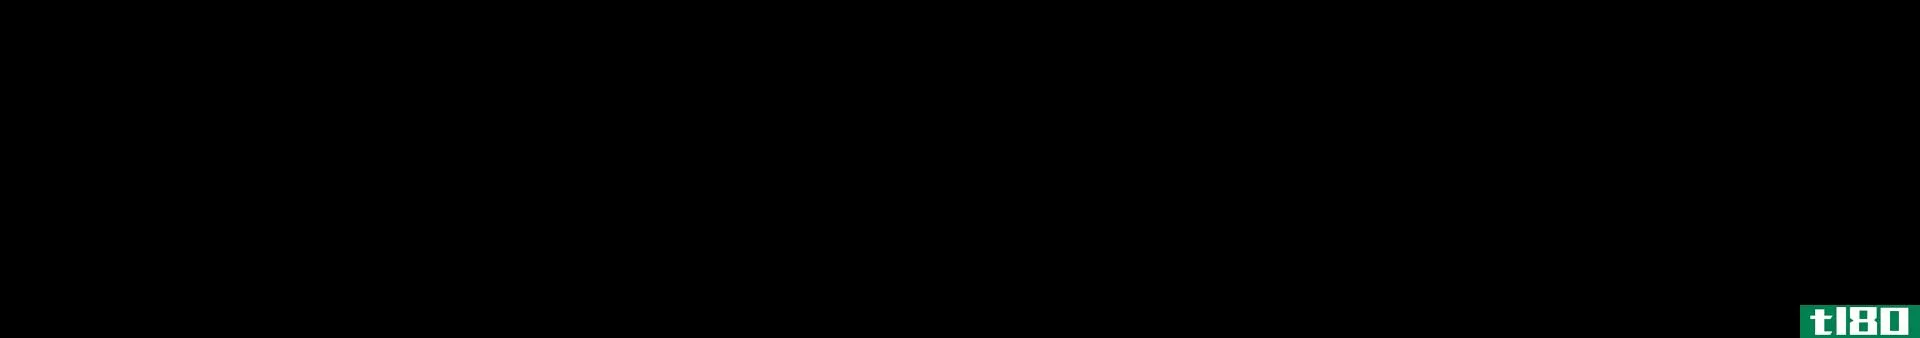 苯甲酸(benzoic acid)和苯甲酸乙酯(ethyl benzoate)的区别